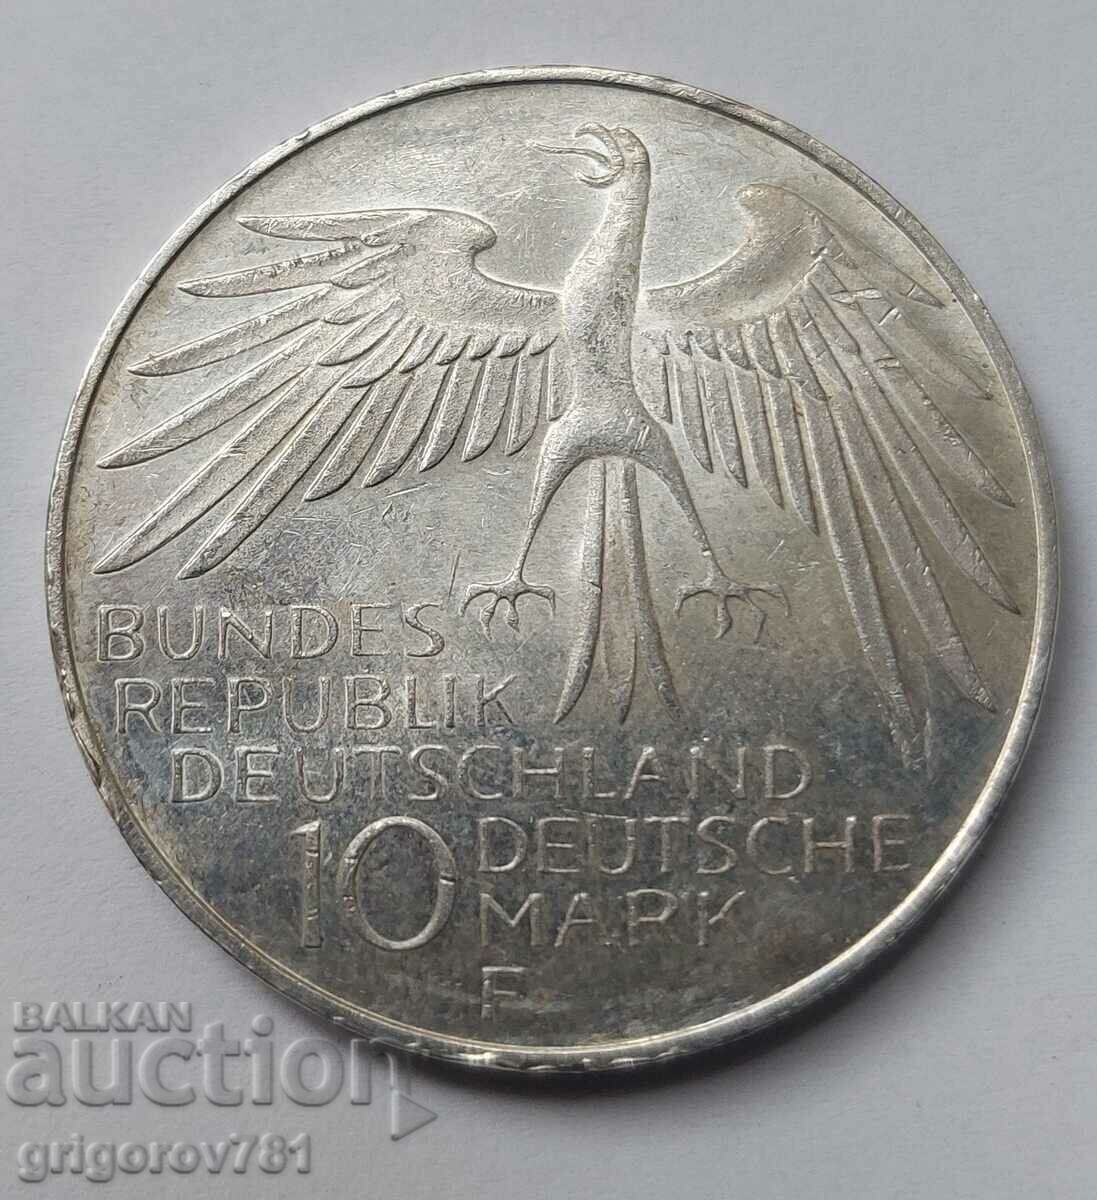 10 μάρκα ασημένιο Γερμανία 1972 F - ασημένιο νόμισμα